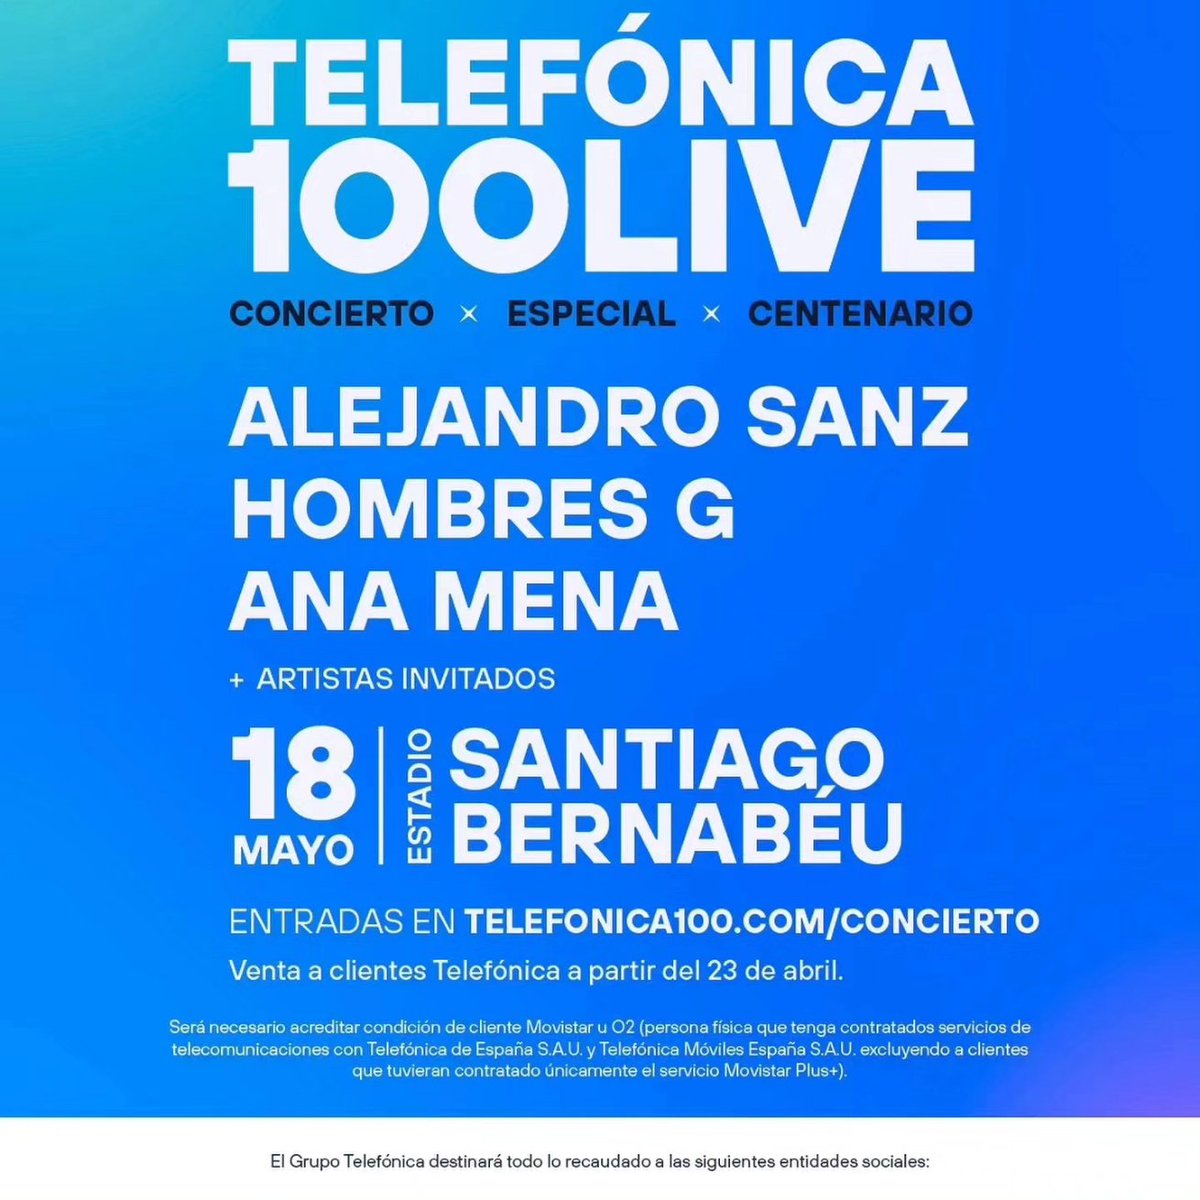 #Repost @alejandrosanz
Los 100 años se celebran, y con música, mejor.  El 18 de mayo ven conmigo al #Telefónica100Live en el Santiago Bernabéu 🙌🥷 

@telefonica